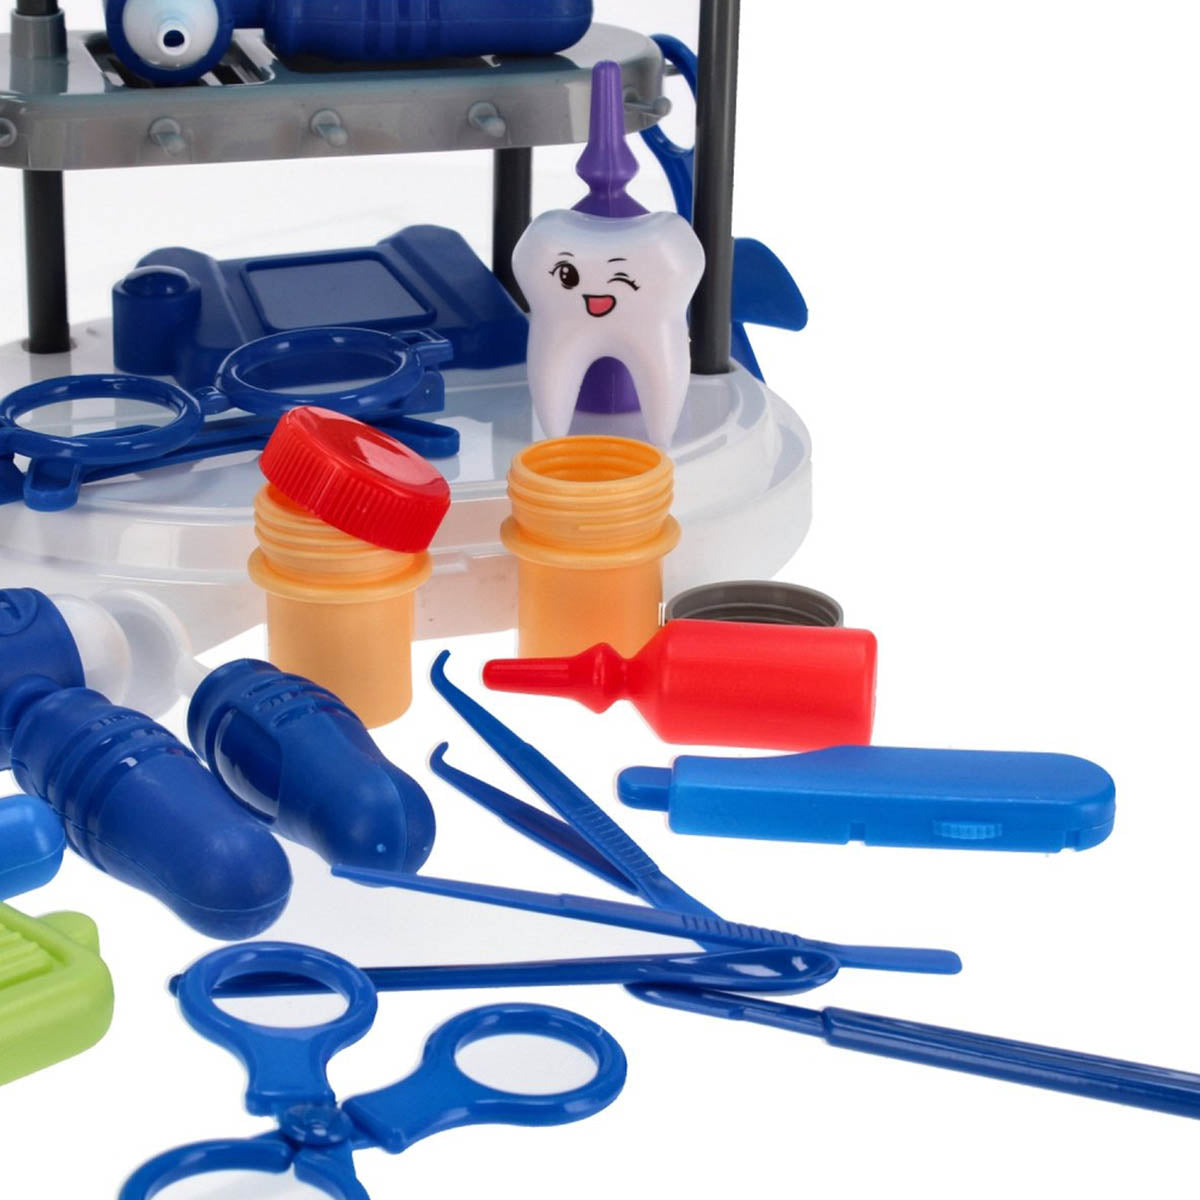 Ariko Spielzeugwagen Doctor 40 Teile - Blutdruckmessgerät, Schere, Medikamente, Untersuchungsutensilien und vieles mehr - praktischer Koffer mit Rollen